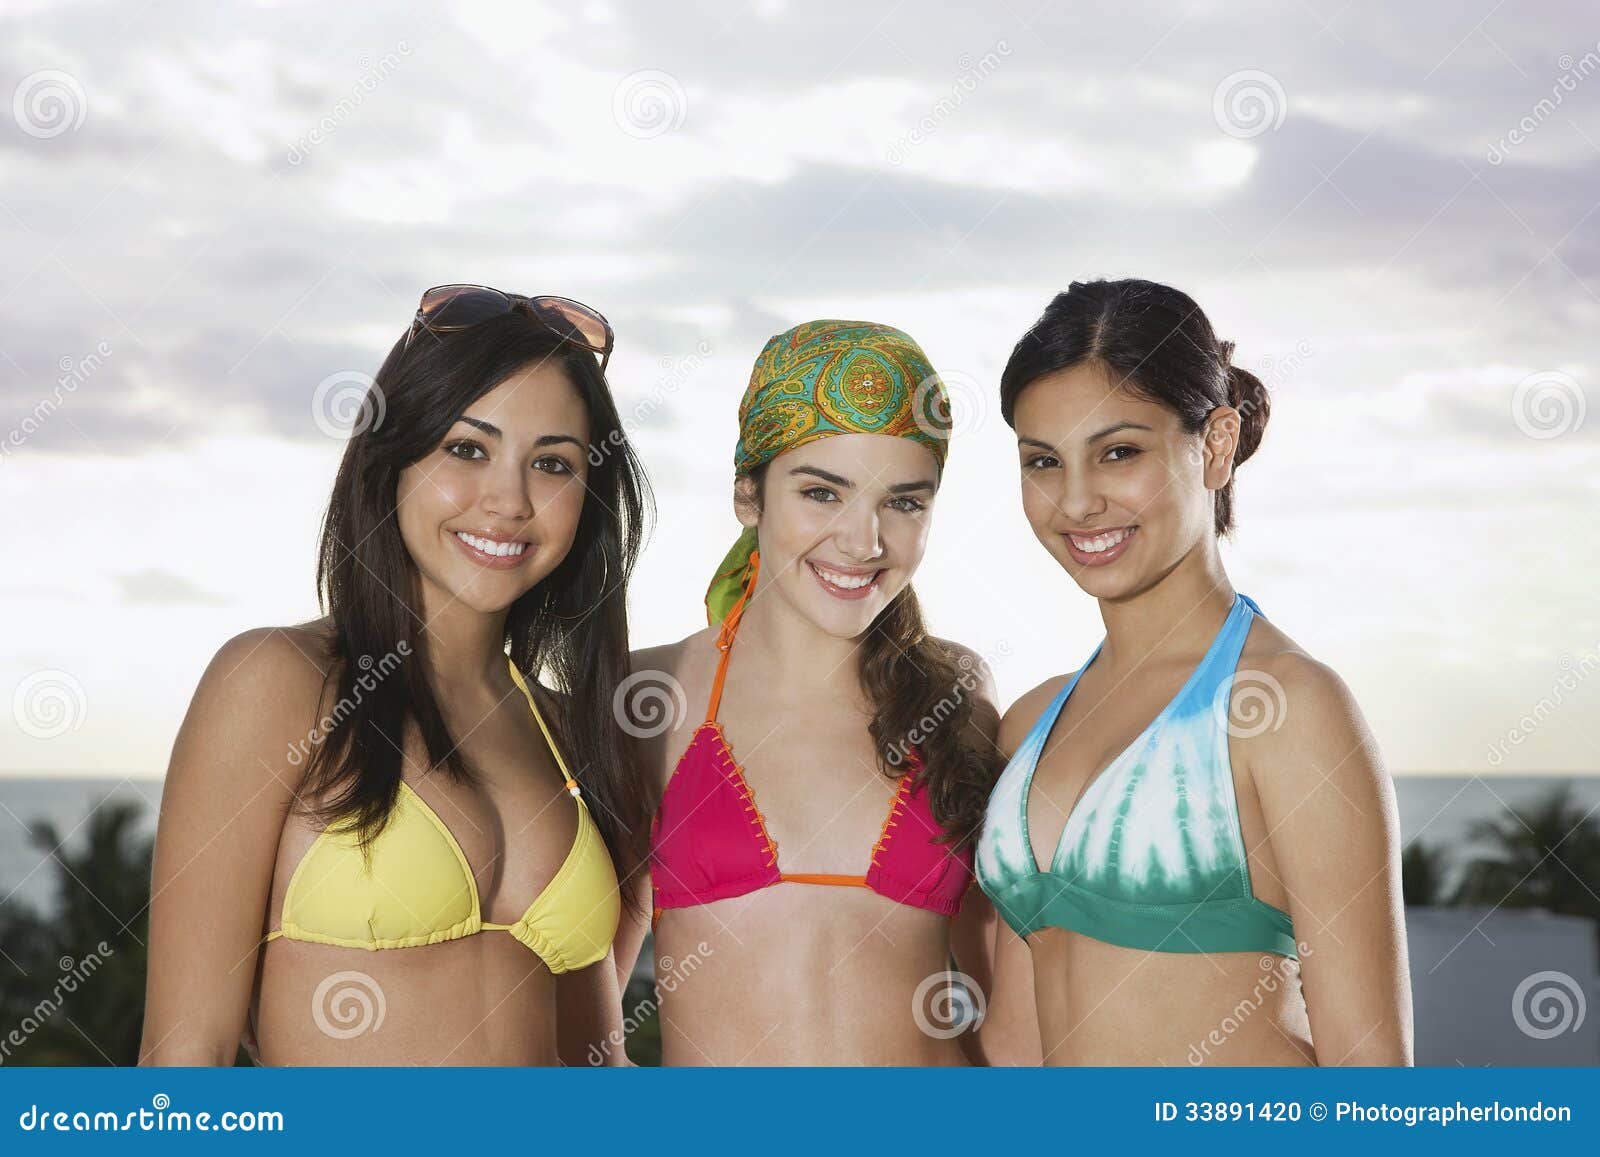 Teenage Girls Bikini